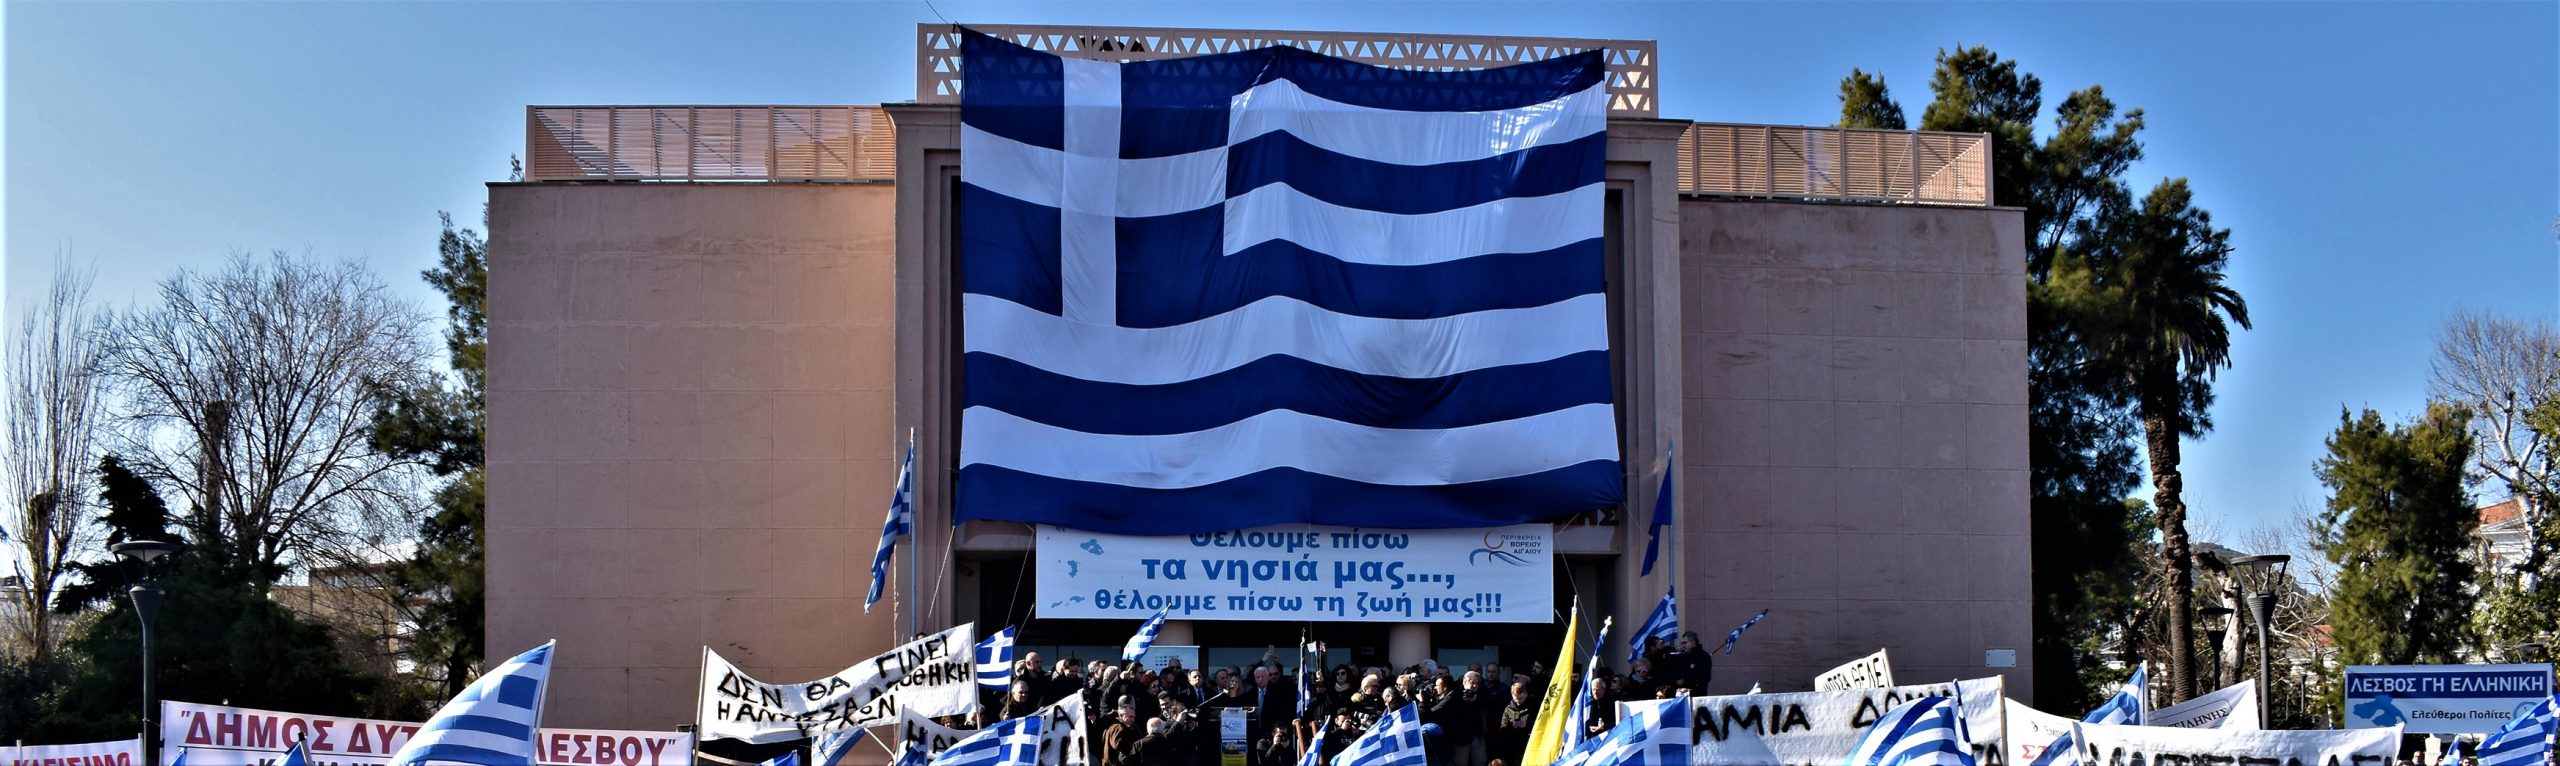 Πολίτες Βορείου Αιγαίου προς την κυβέρνηση για τις επιτάξεις γης υπέρ των αλλοδαπών: «Μολών λαβέ»!